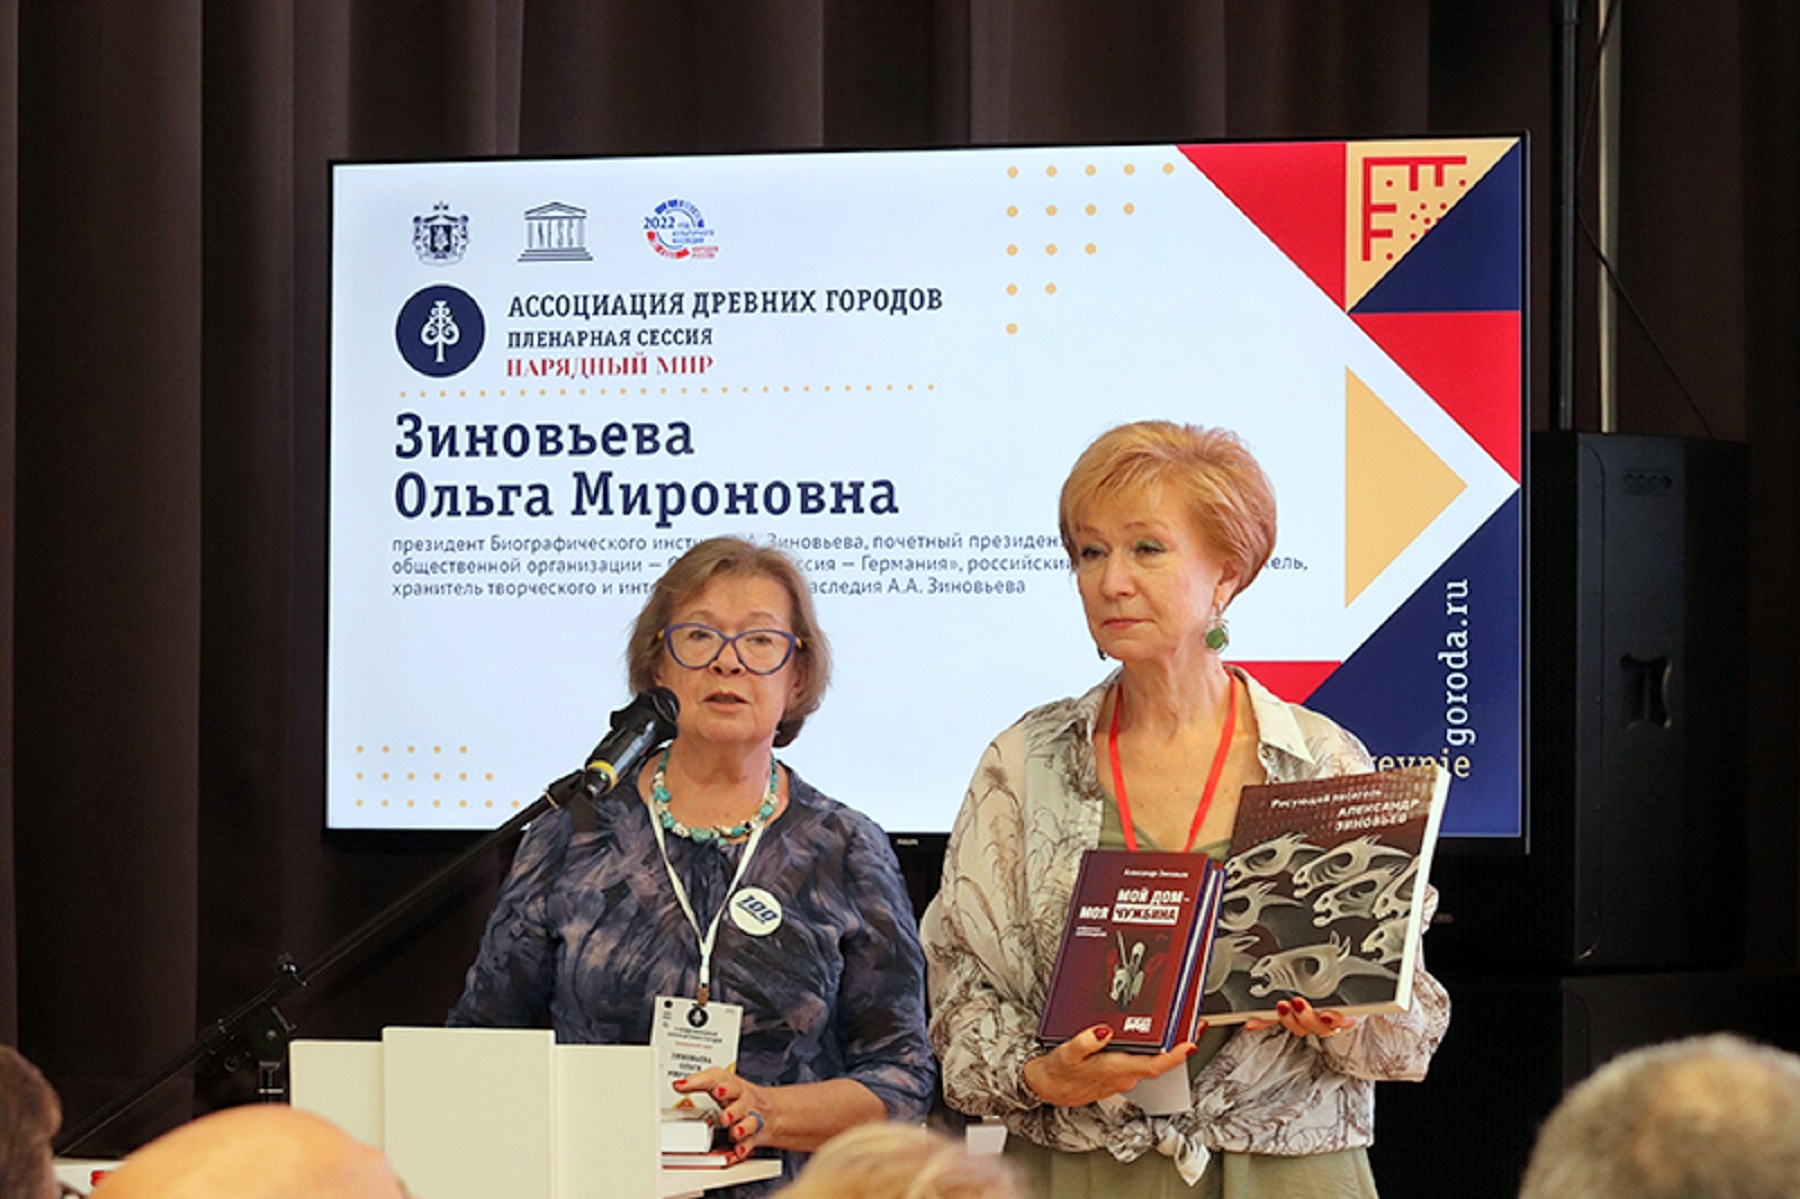 Выступление Ольги Зиновьевой на пленарном заседании Ассоциации древних городов в Рязани